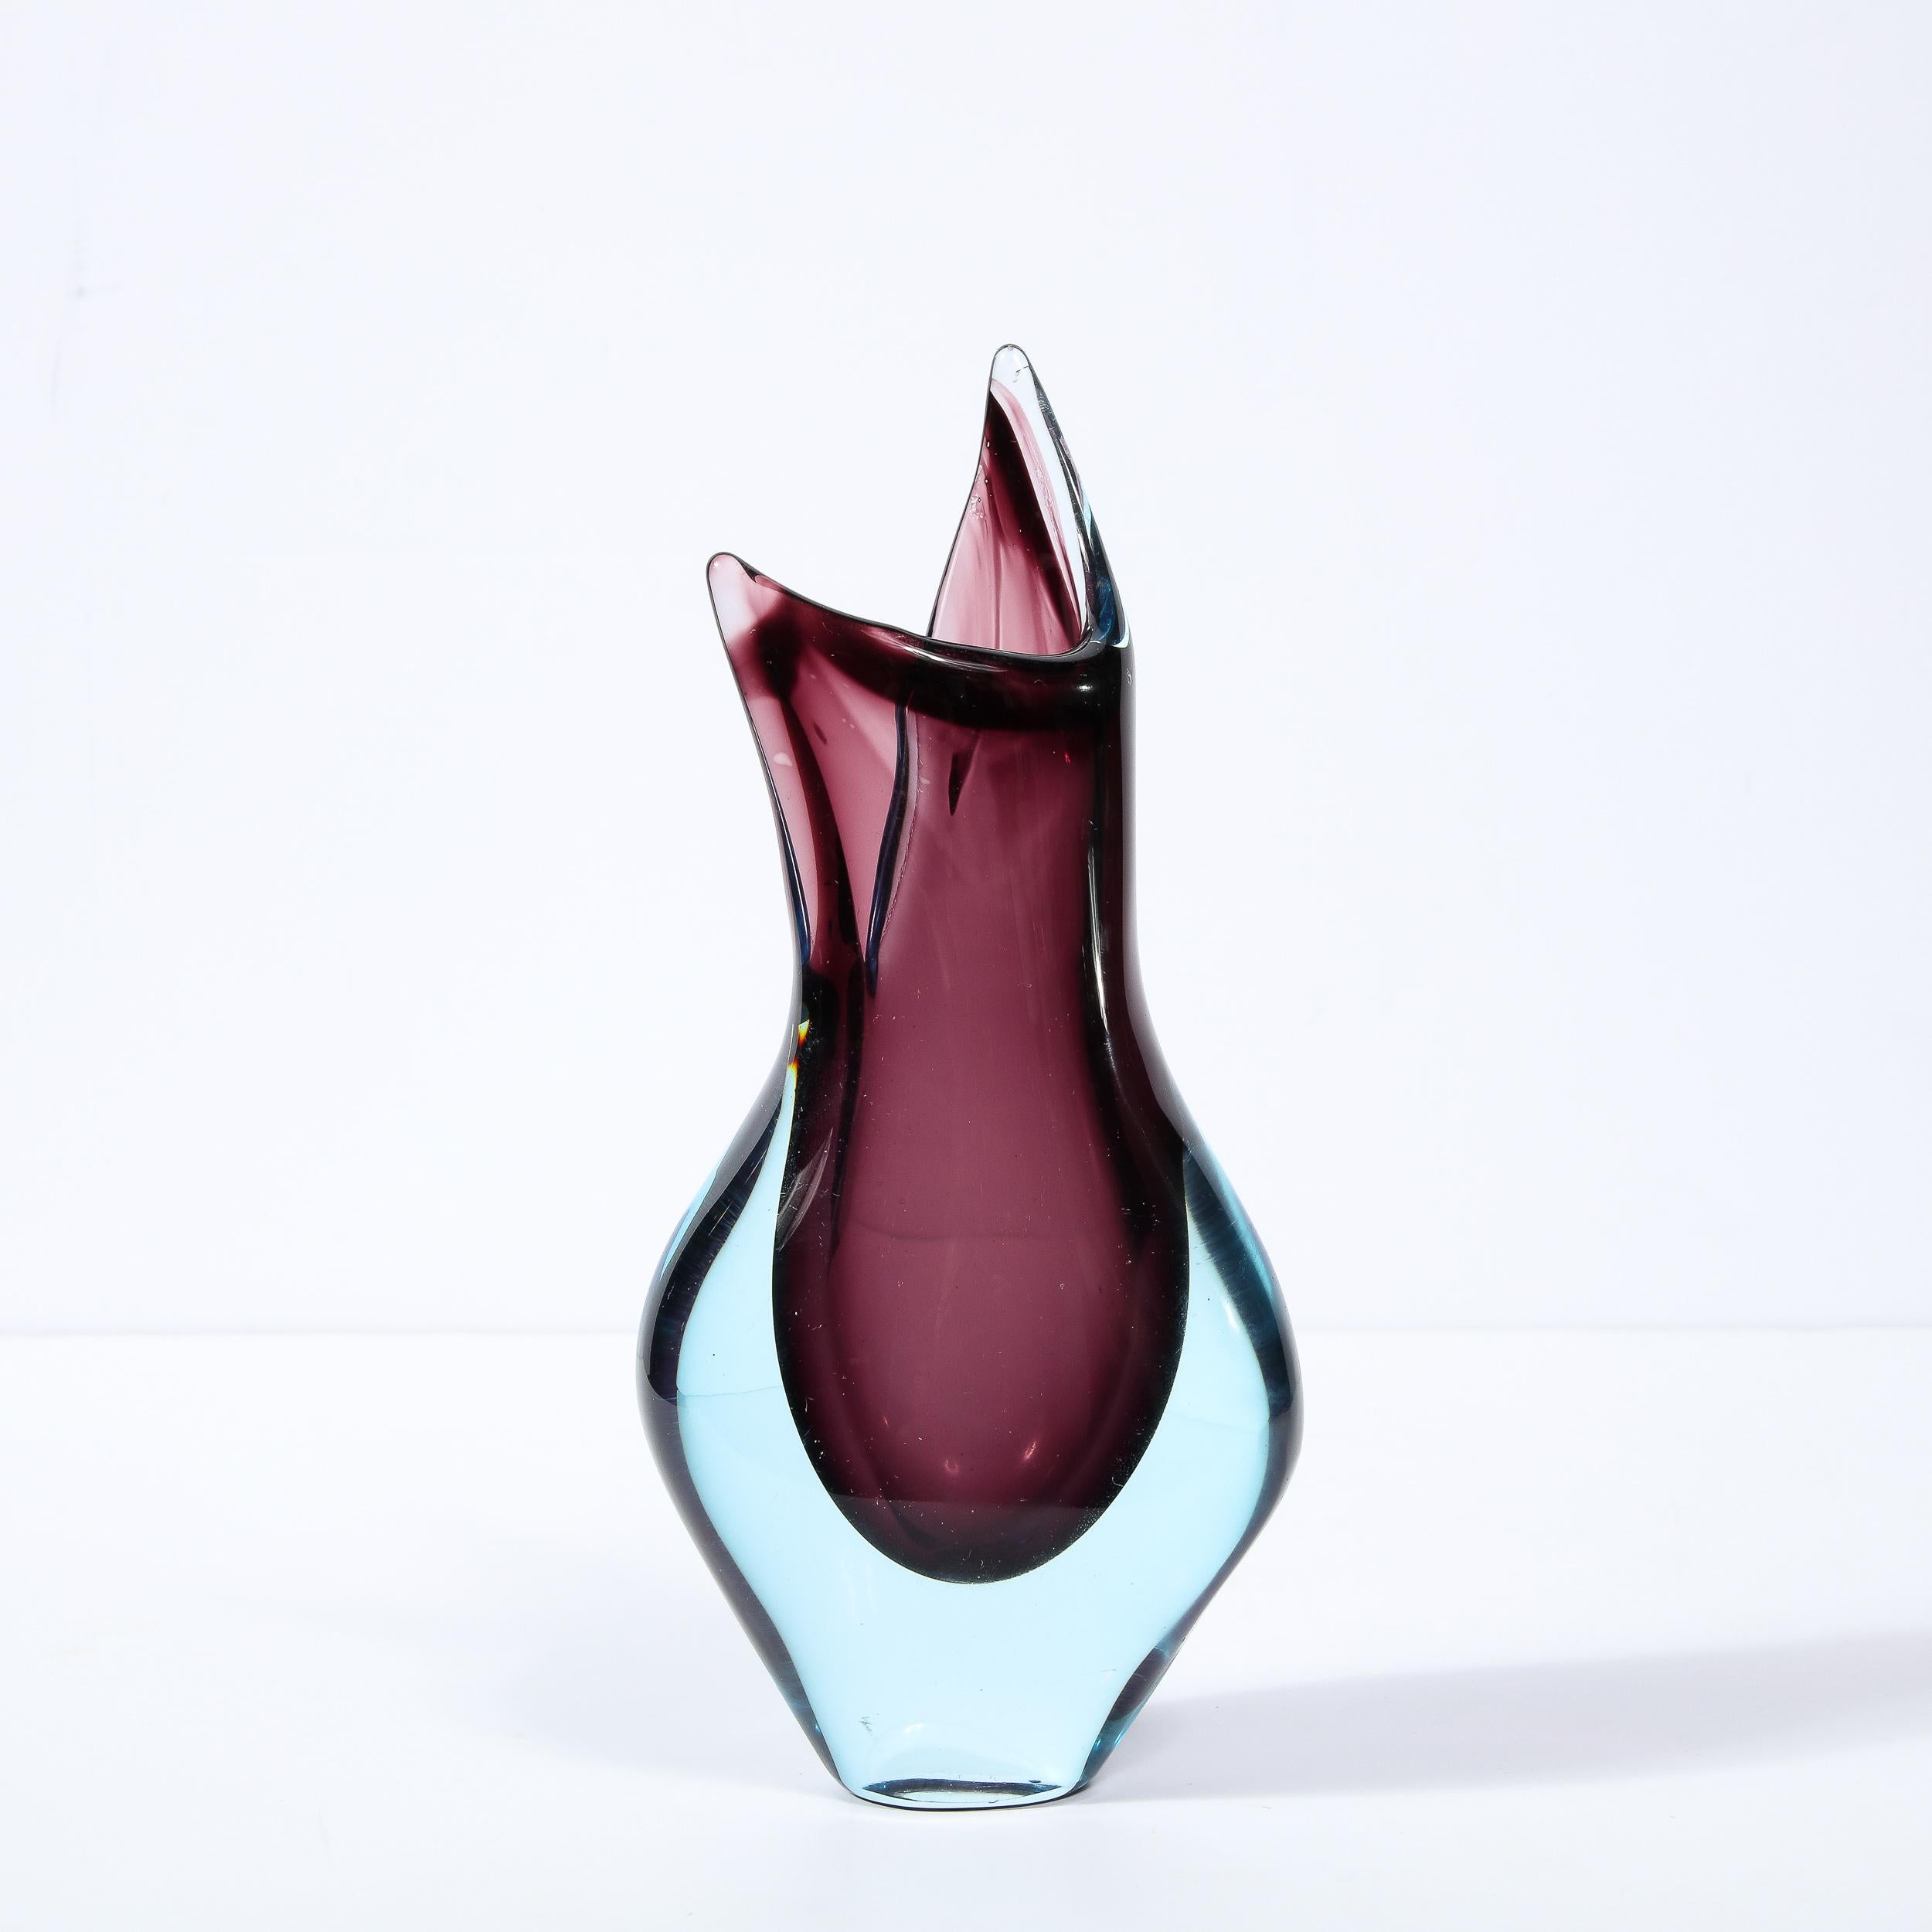 Diese elegante und grafische Mid-Century Modern Vase wurde in Murano, Italien, hergestellt - der Insel vor der Küste Venedigs, die seit Jahrhunderten für ihre hervorragende Glasproduktion bekannt ist. Er weist eine eigenwillige, amorphe Form auf,